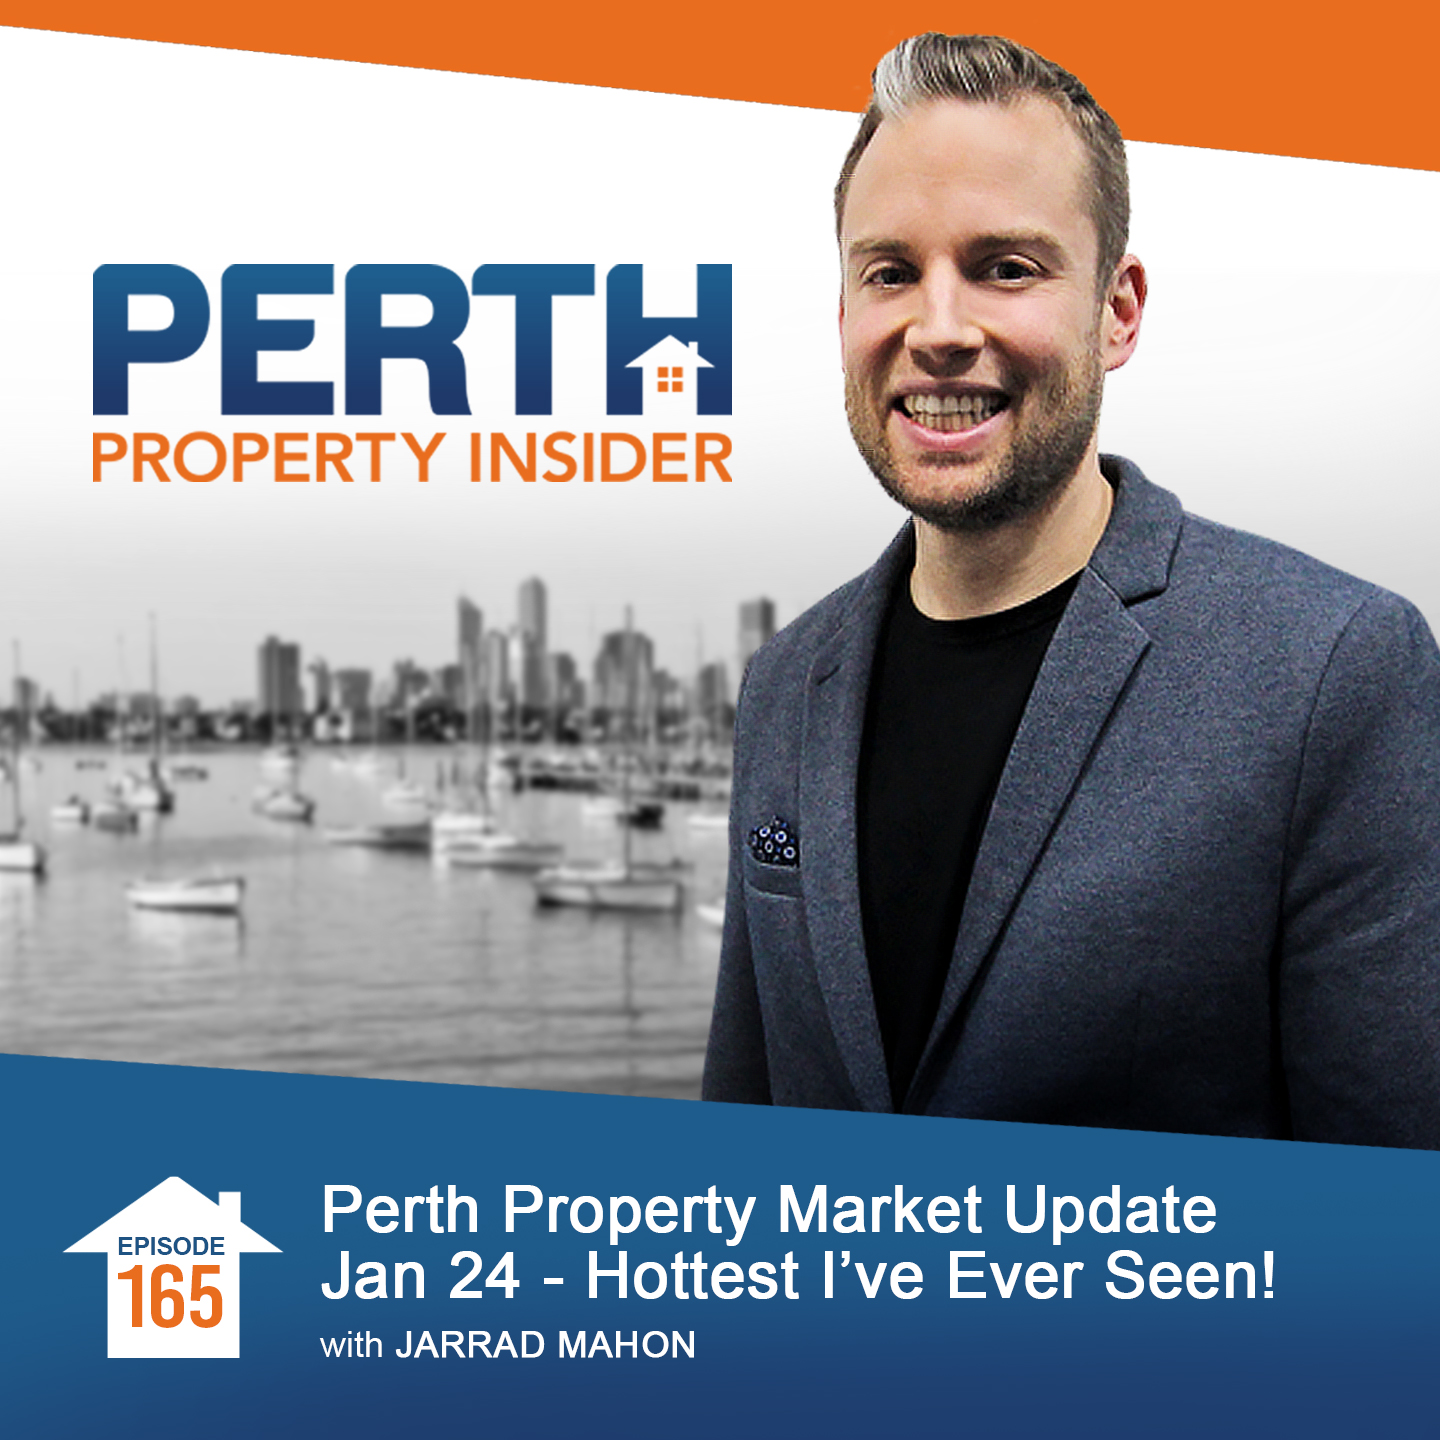 Perth Property Market Update Jan 24 - Hottest I’ve Ever Seen!